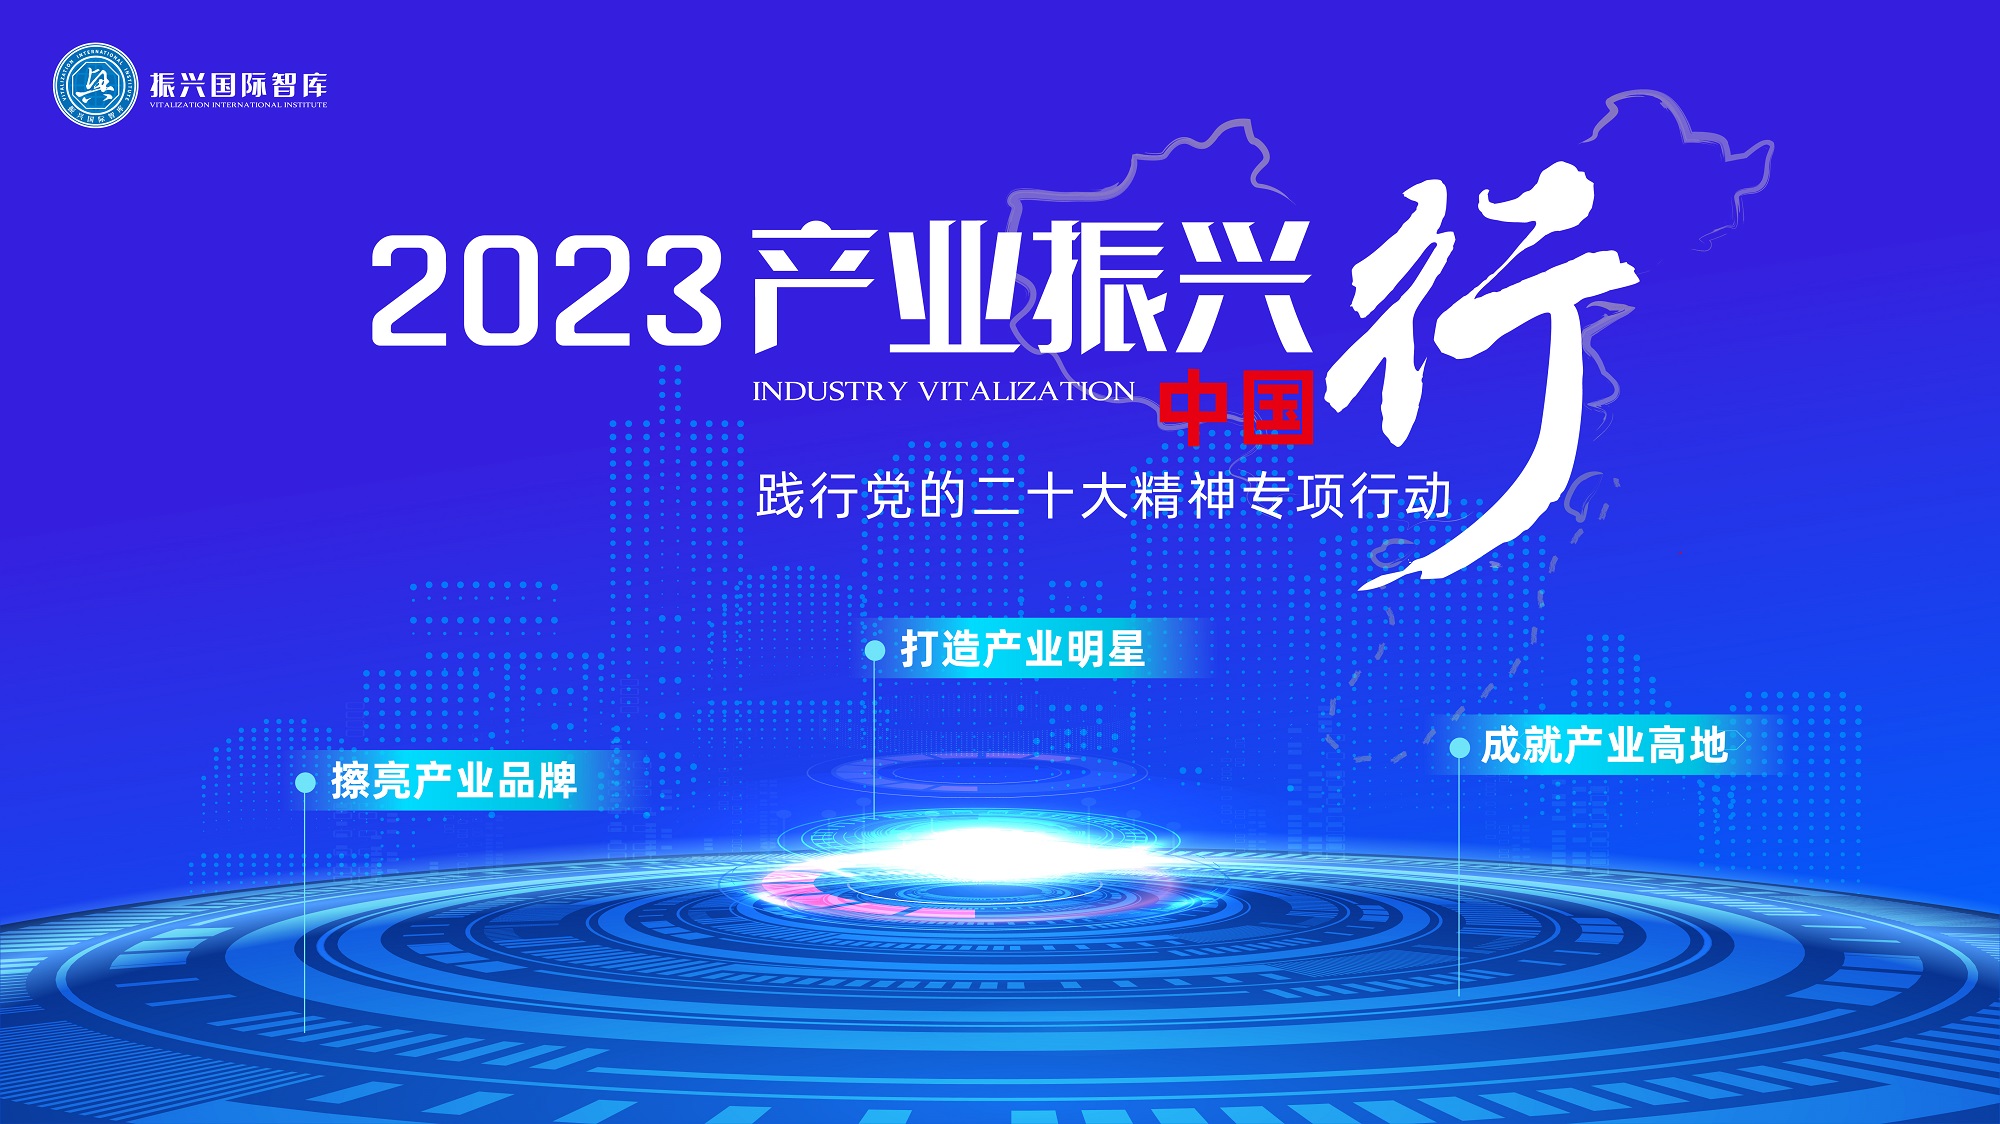 “2023产业振兴中国行”已启动“下一站”预约机制